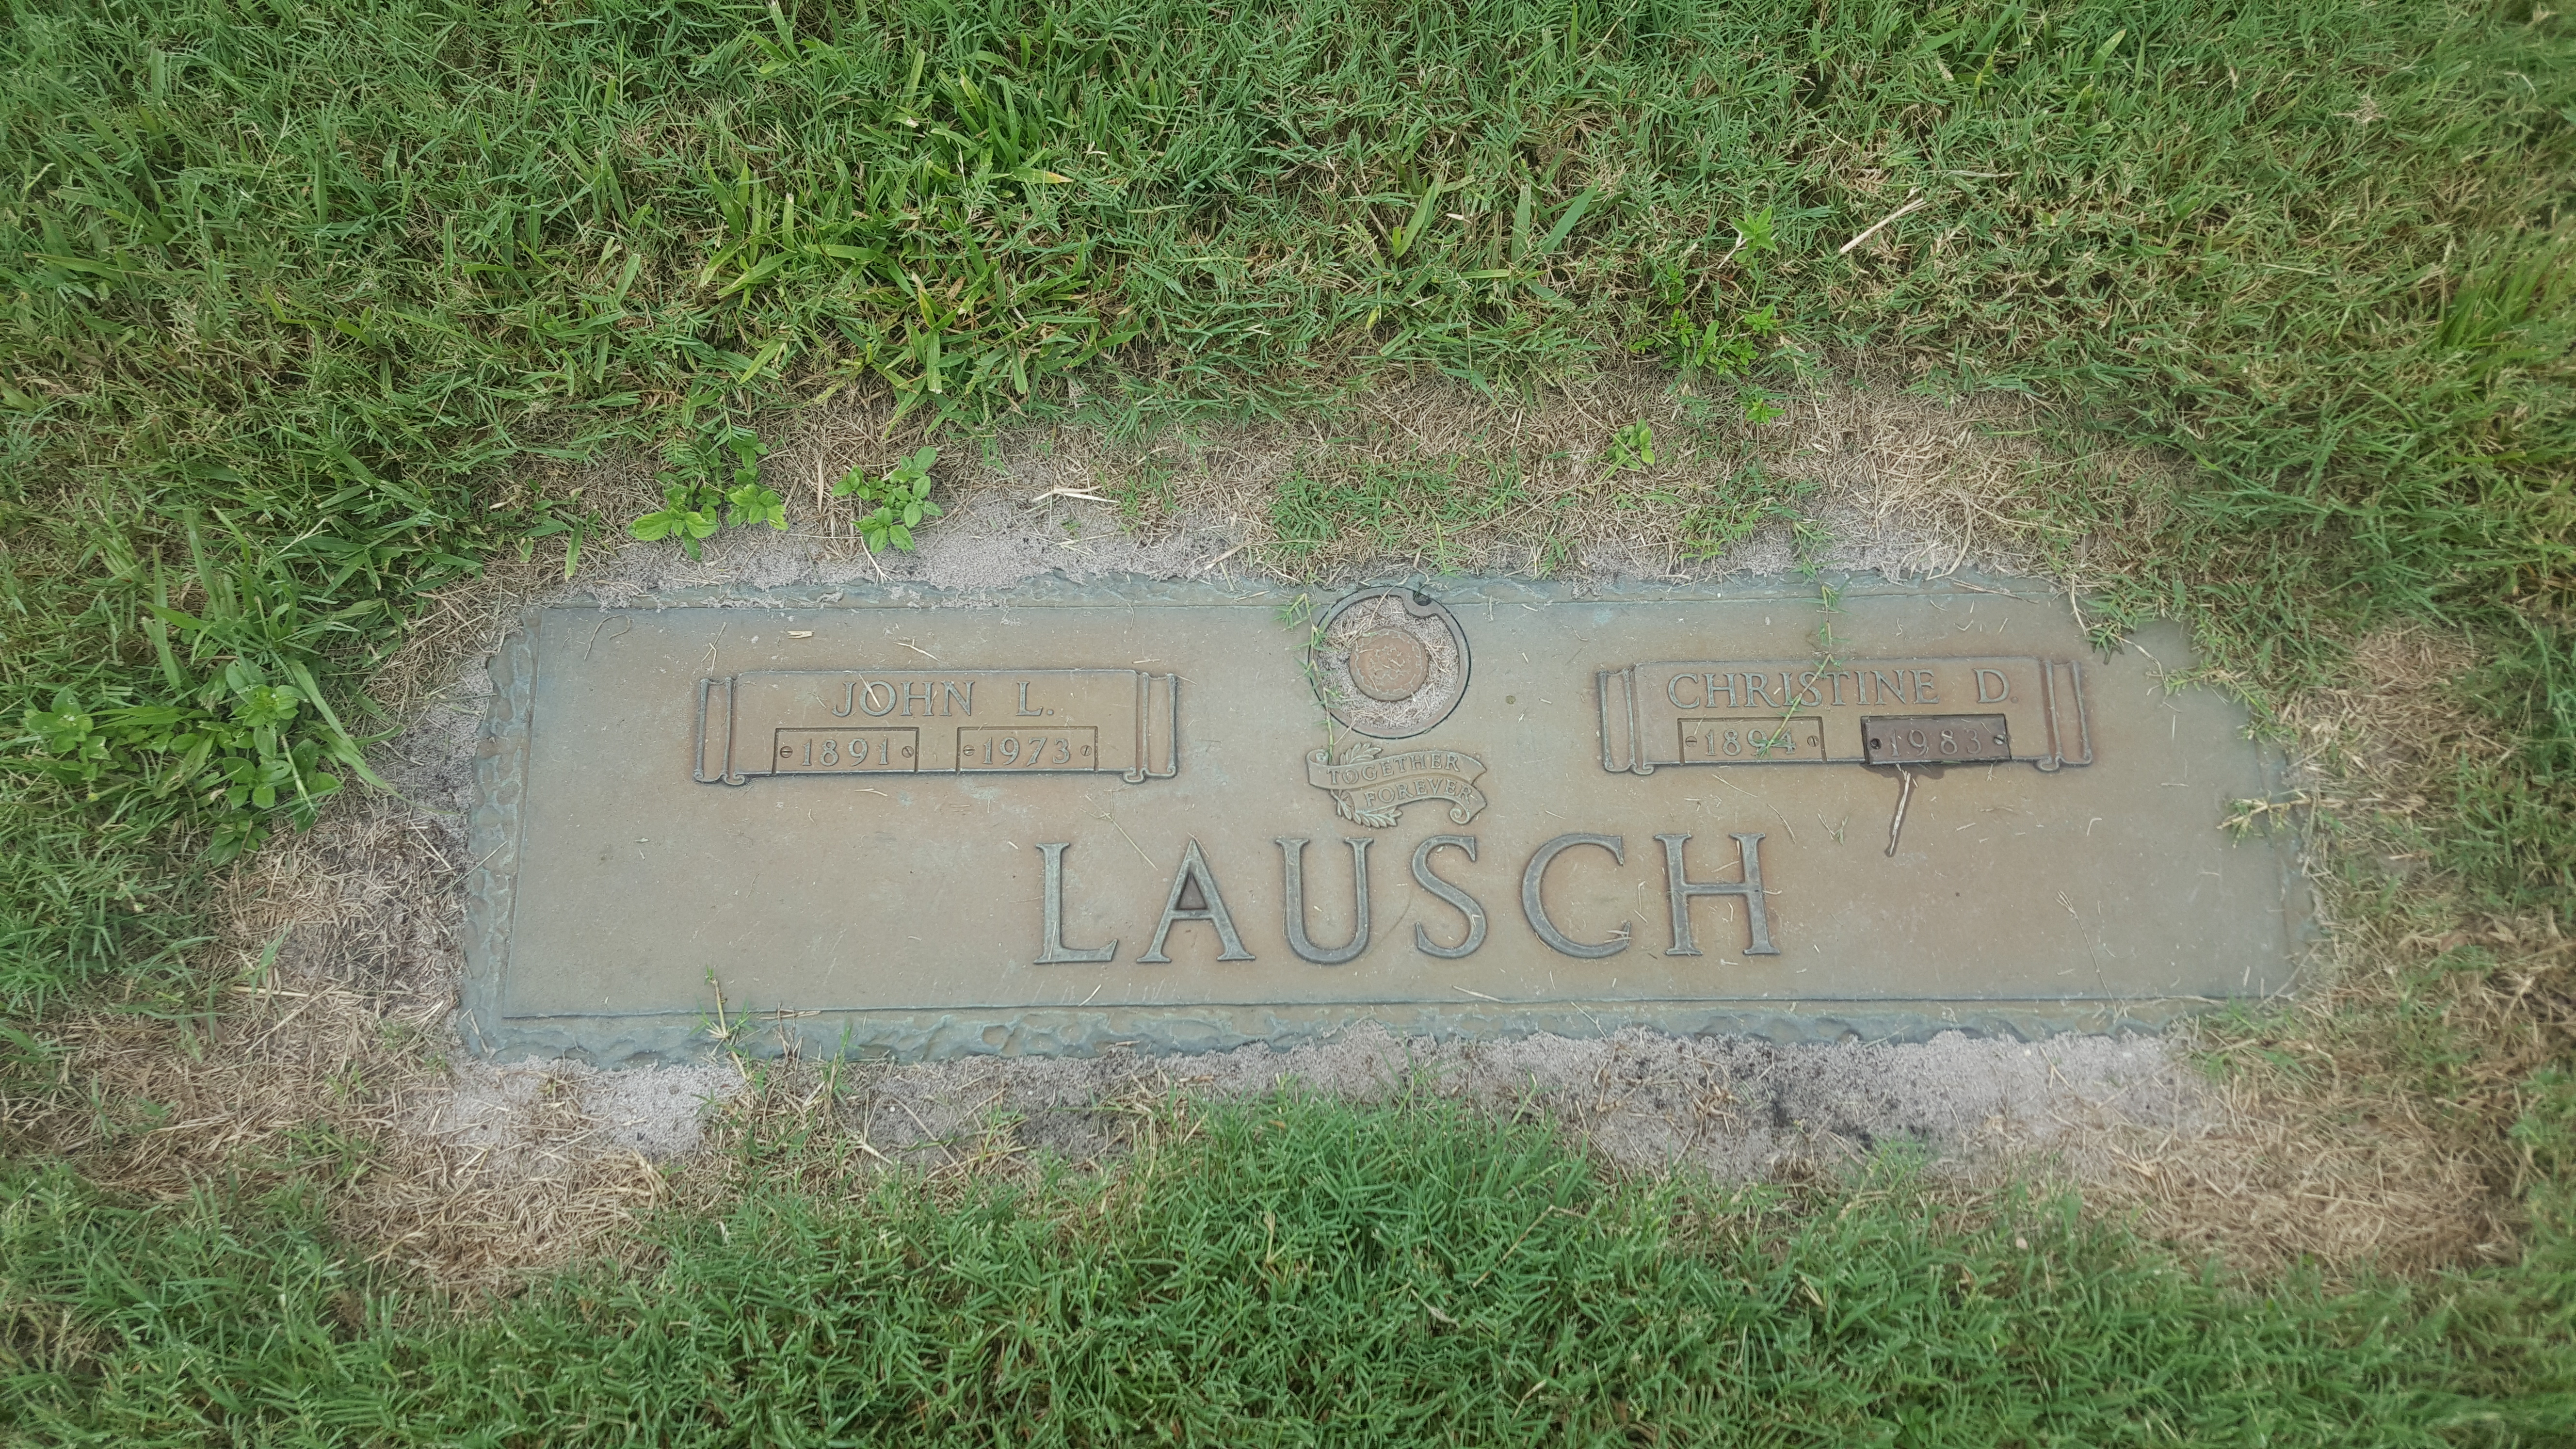 John L Lausch